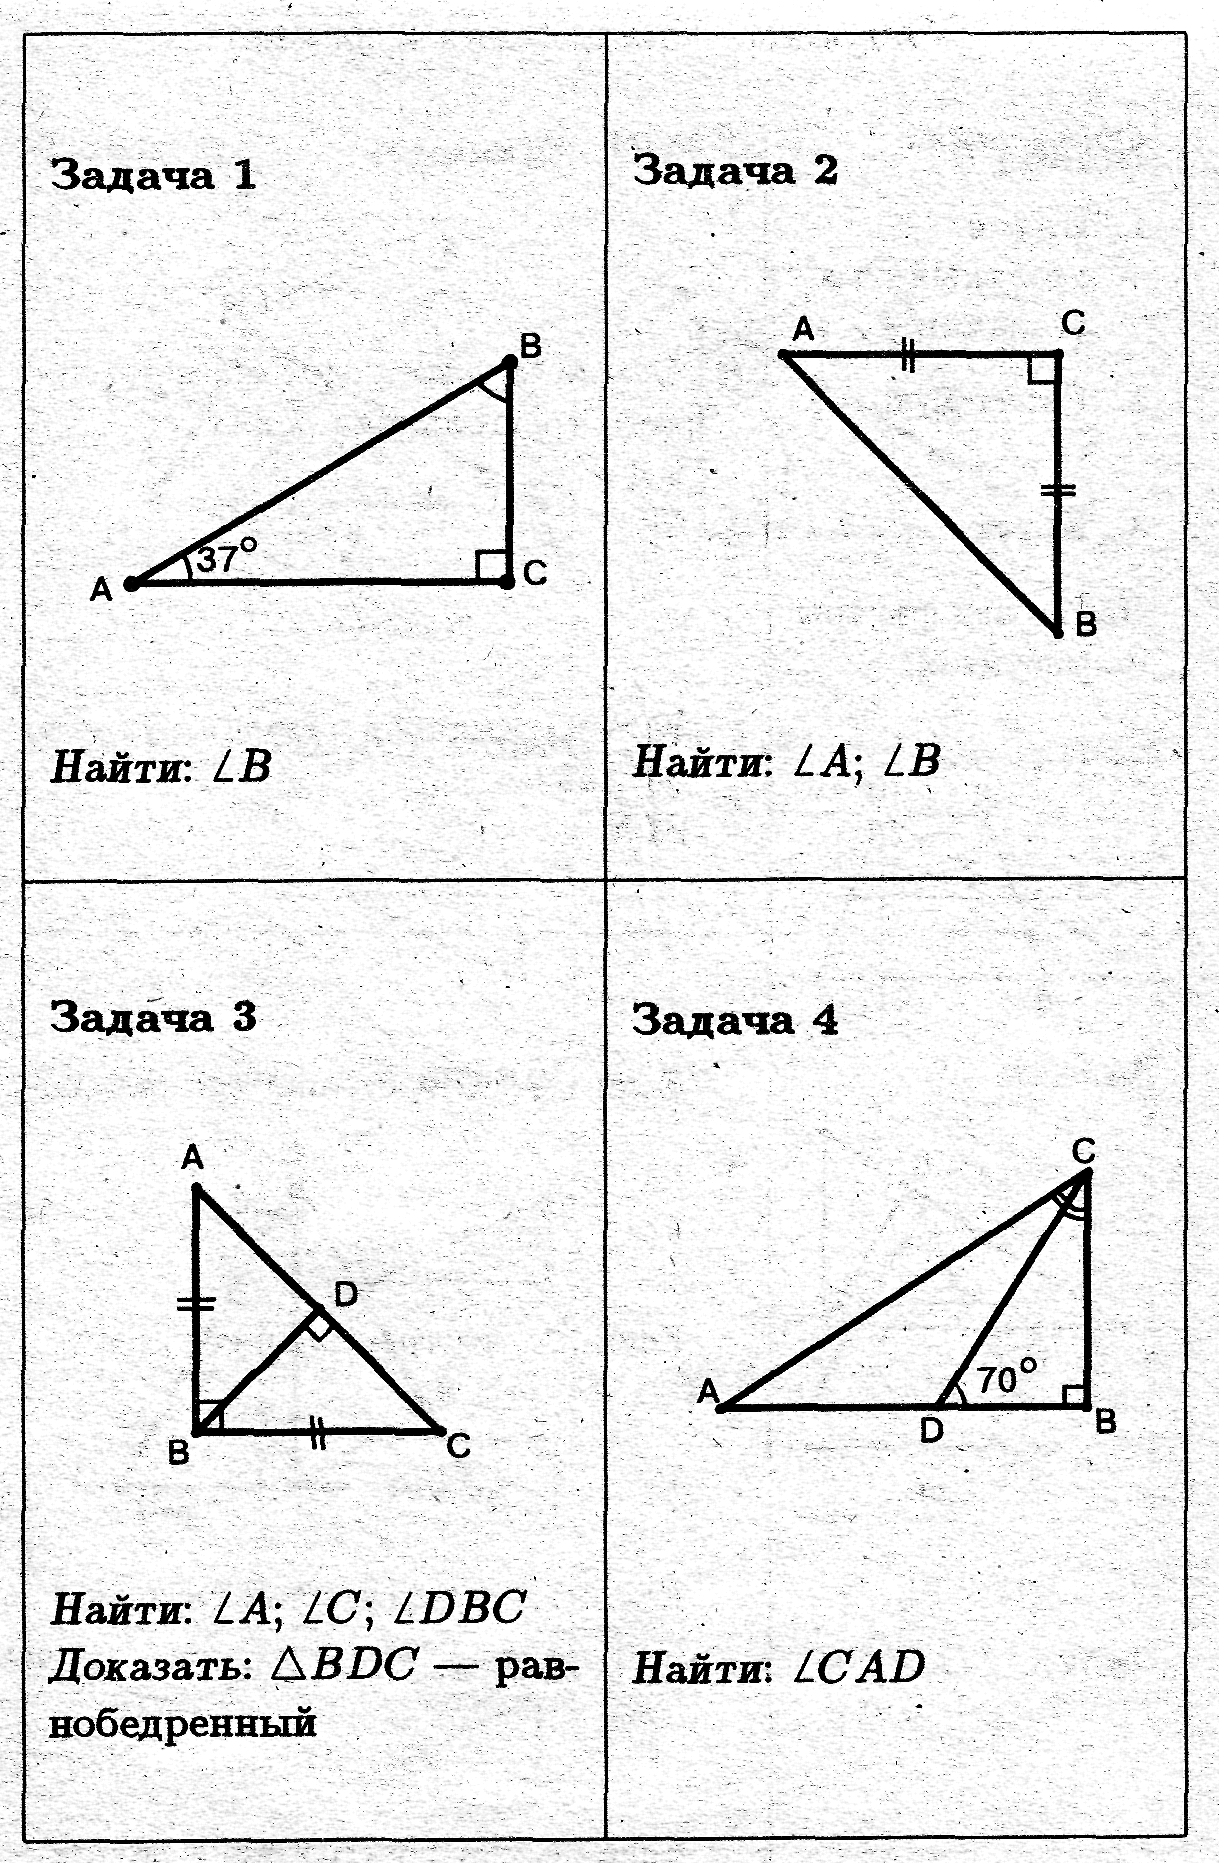 Решение прямоугольных треугольников по готовым чертежам. Задачи на прямоугольный треугольник 7 класс по готовым чертежам. Свойства прямоугольного треугольника задачи на готовых чертежах. Задачи на прямоугольный треугольник 7 класс. Задачи по геометрии 7 класс прямоугольные треугольники.